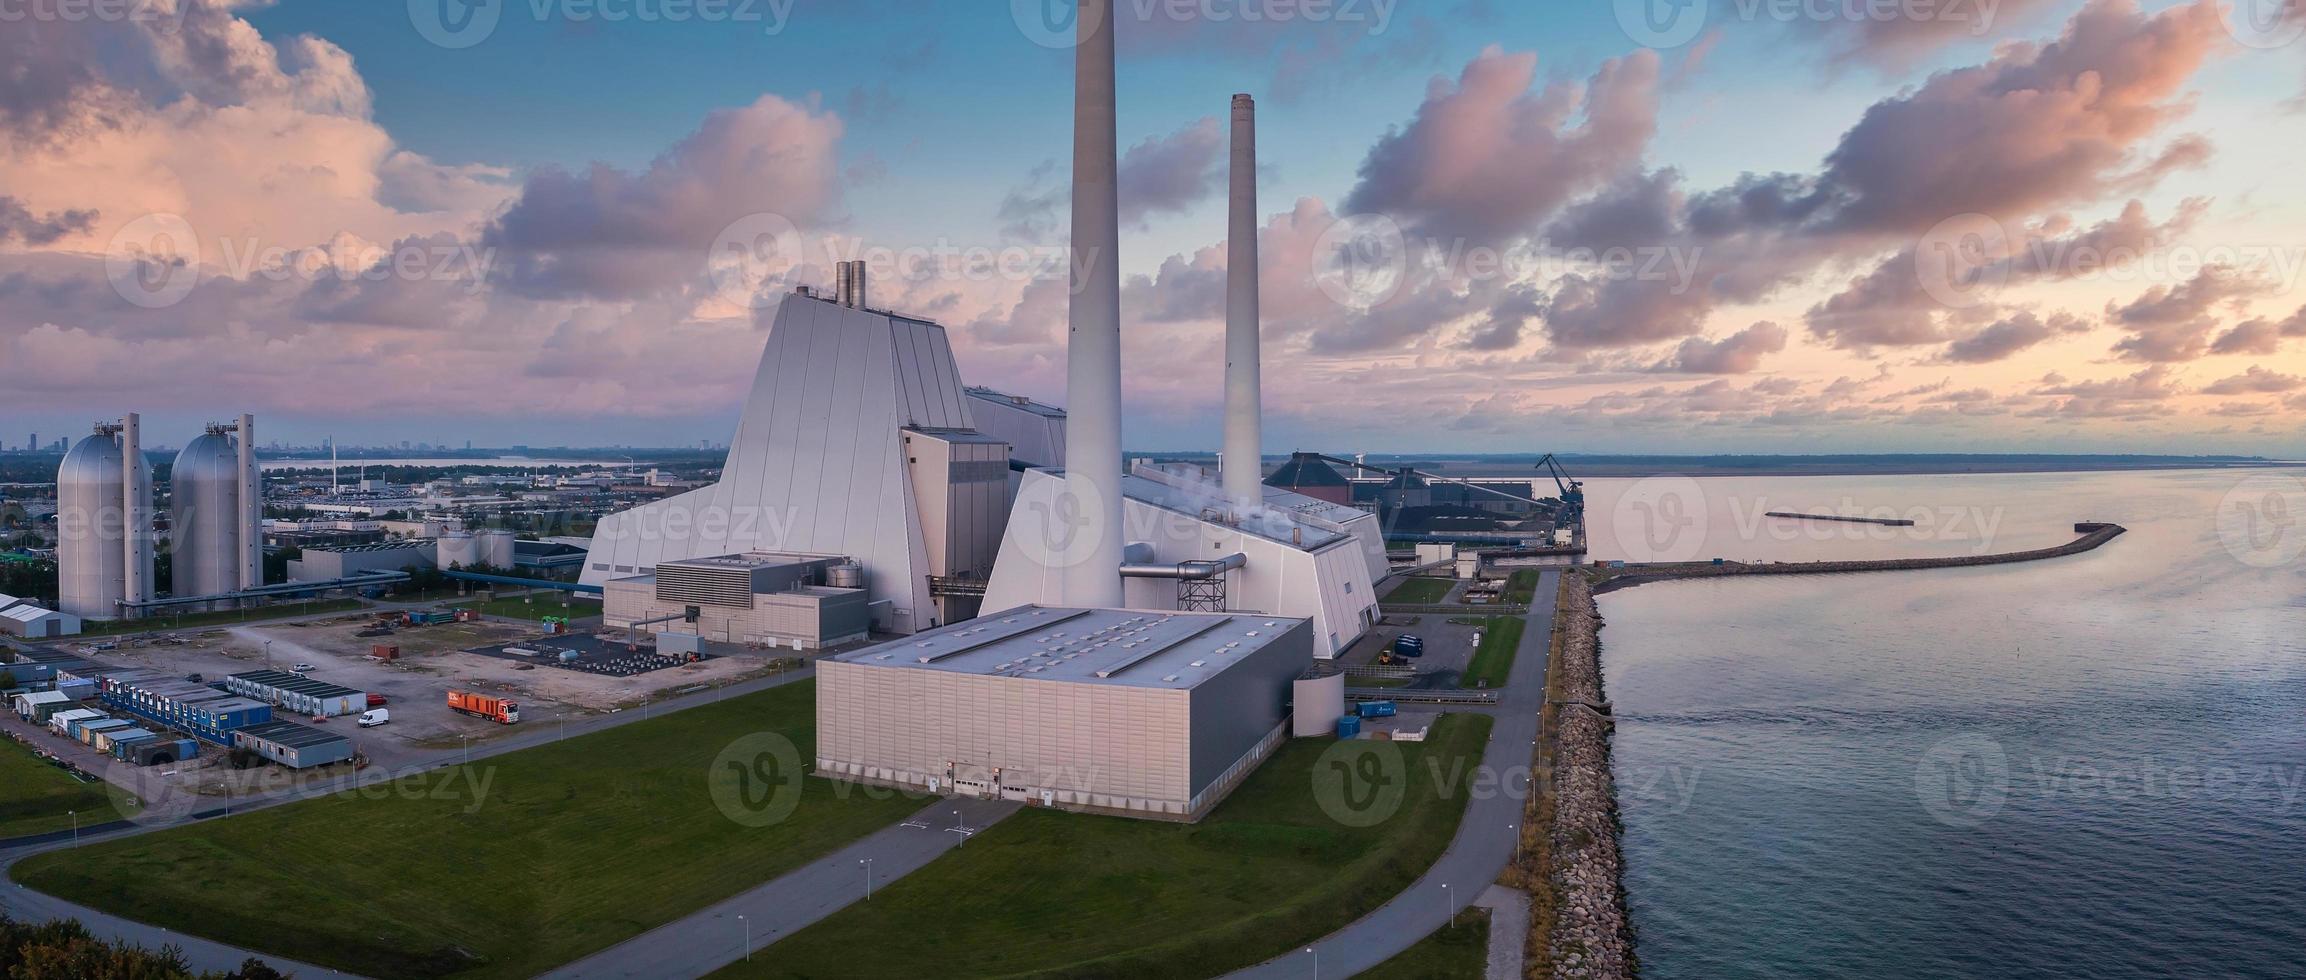 veduta aerea della centrale. una delle centrali elettriche più belle ed ecologiche del mondo. ad esempio energia verde. foto